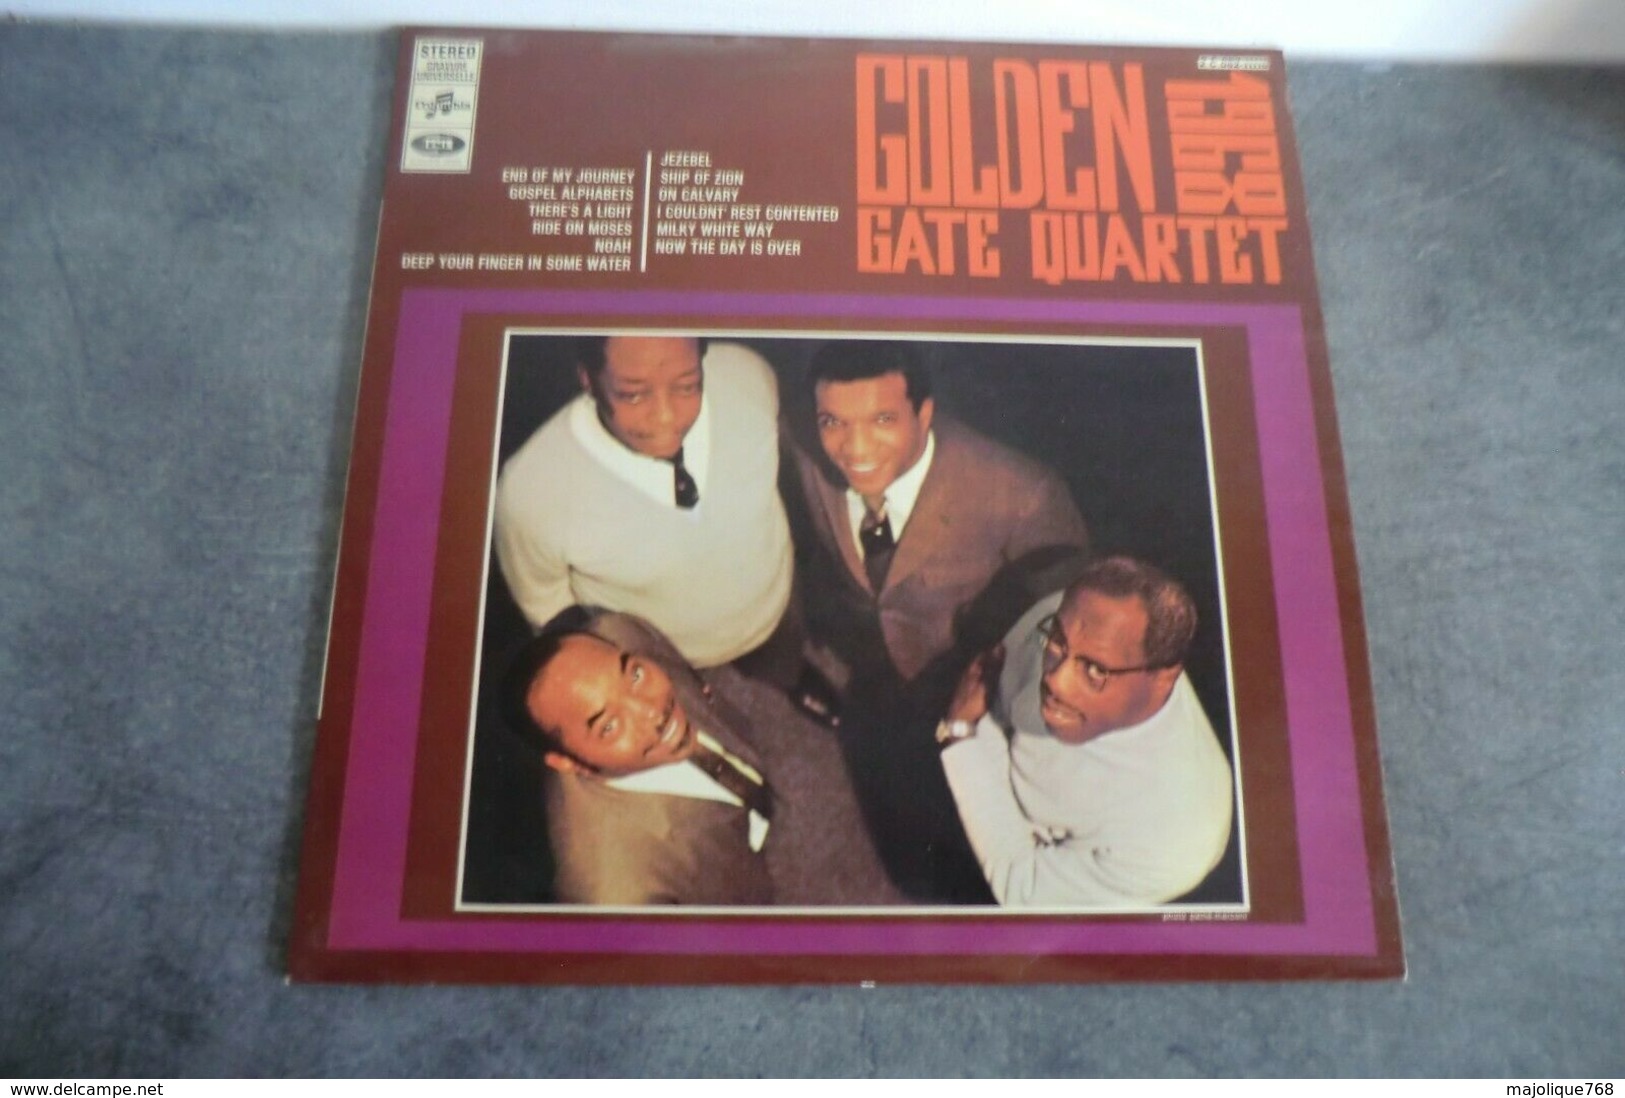 Disque - Golden Gate Quartet 1968 - Columbia 2 C 062-11116 - - Religion & Gospel